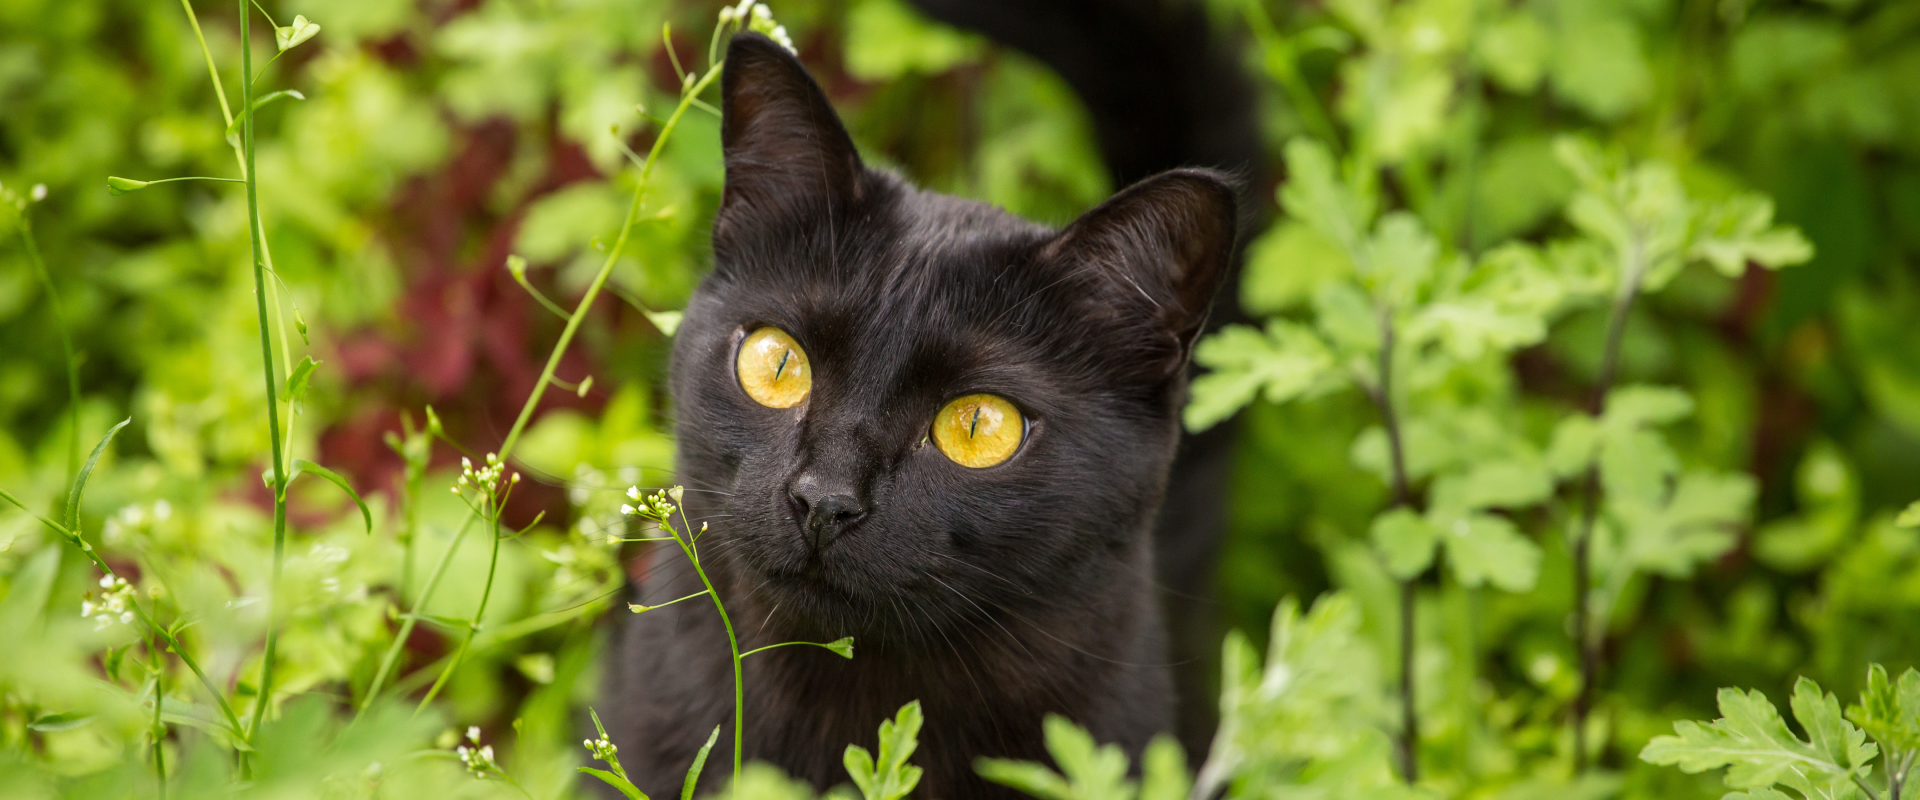 An outdoor cat exploring.